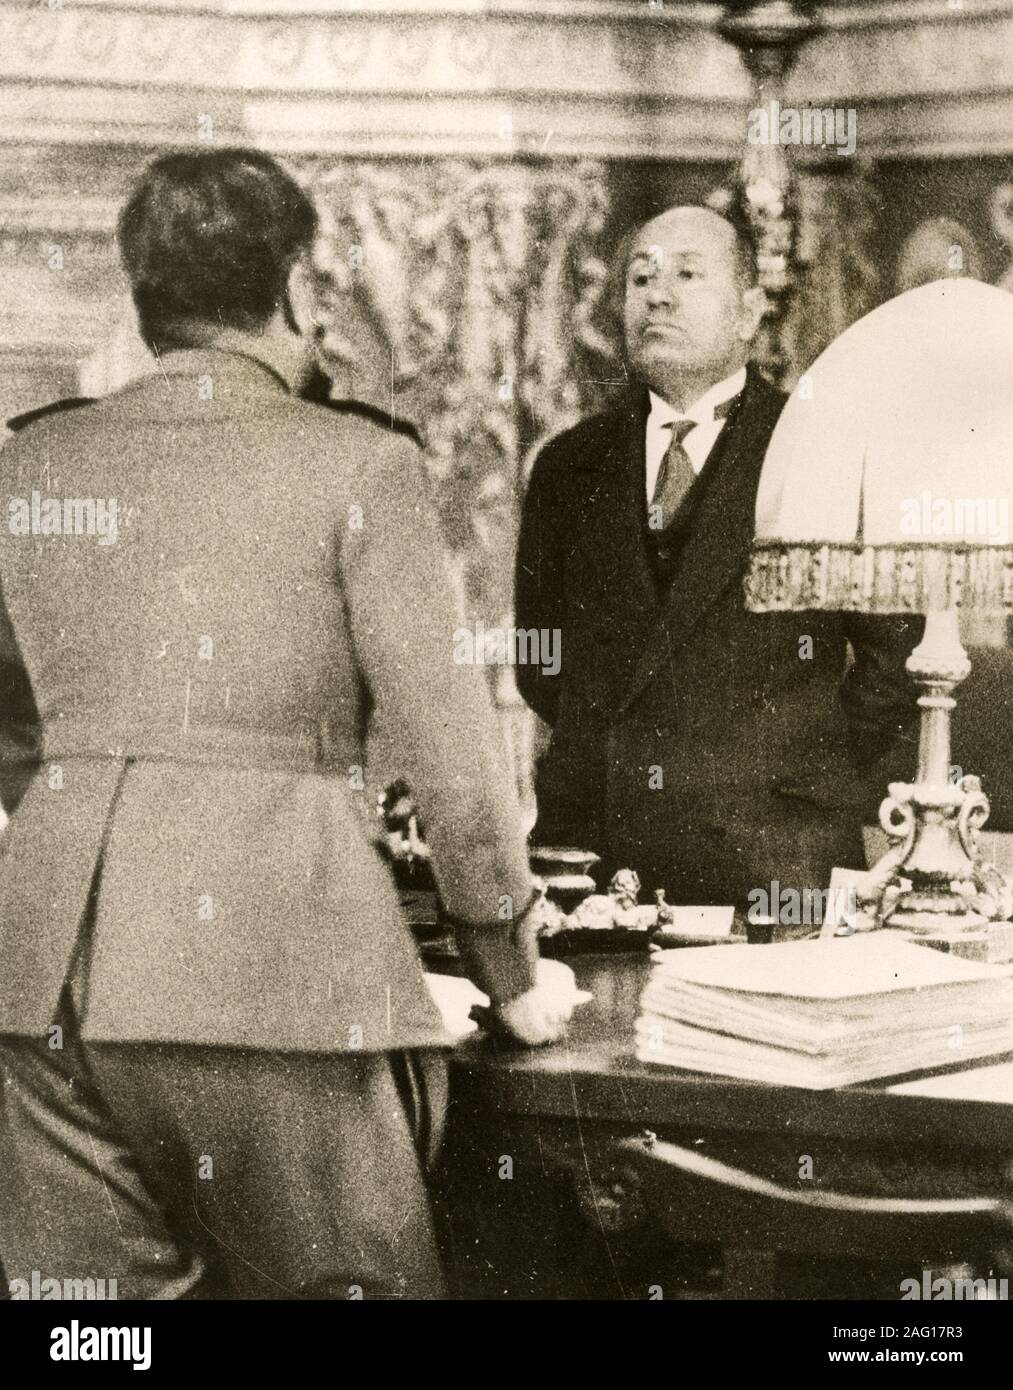 Nei primi anni del XX secolo vintage premere fotografia - Benito Mussolini, Italiana leader fascista, in conversazione con il suo capo della milizia, c.1920s Foto Stock